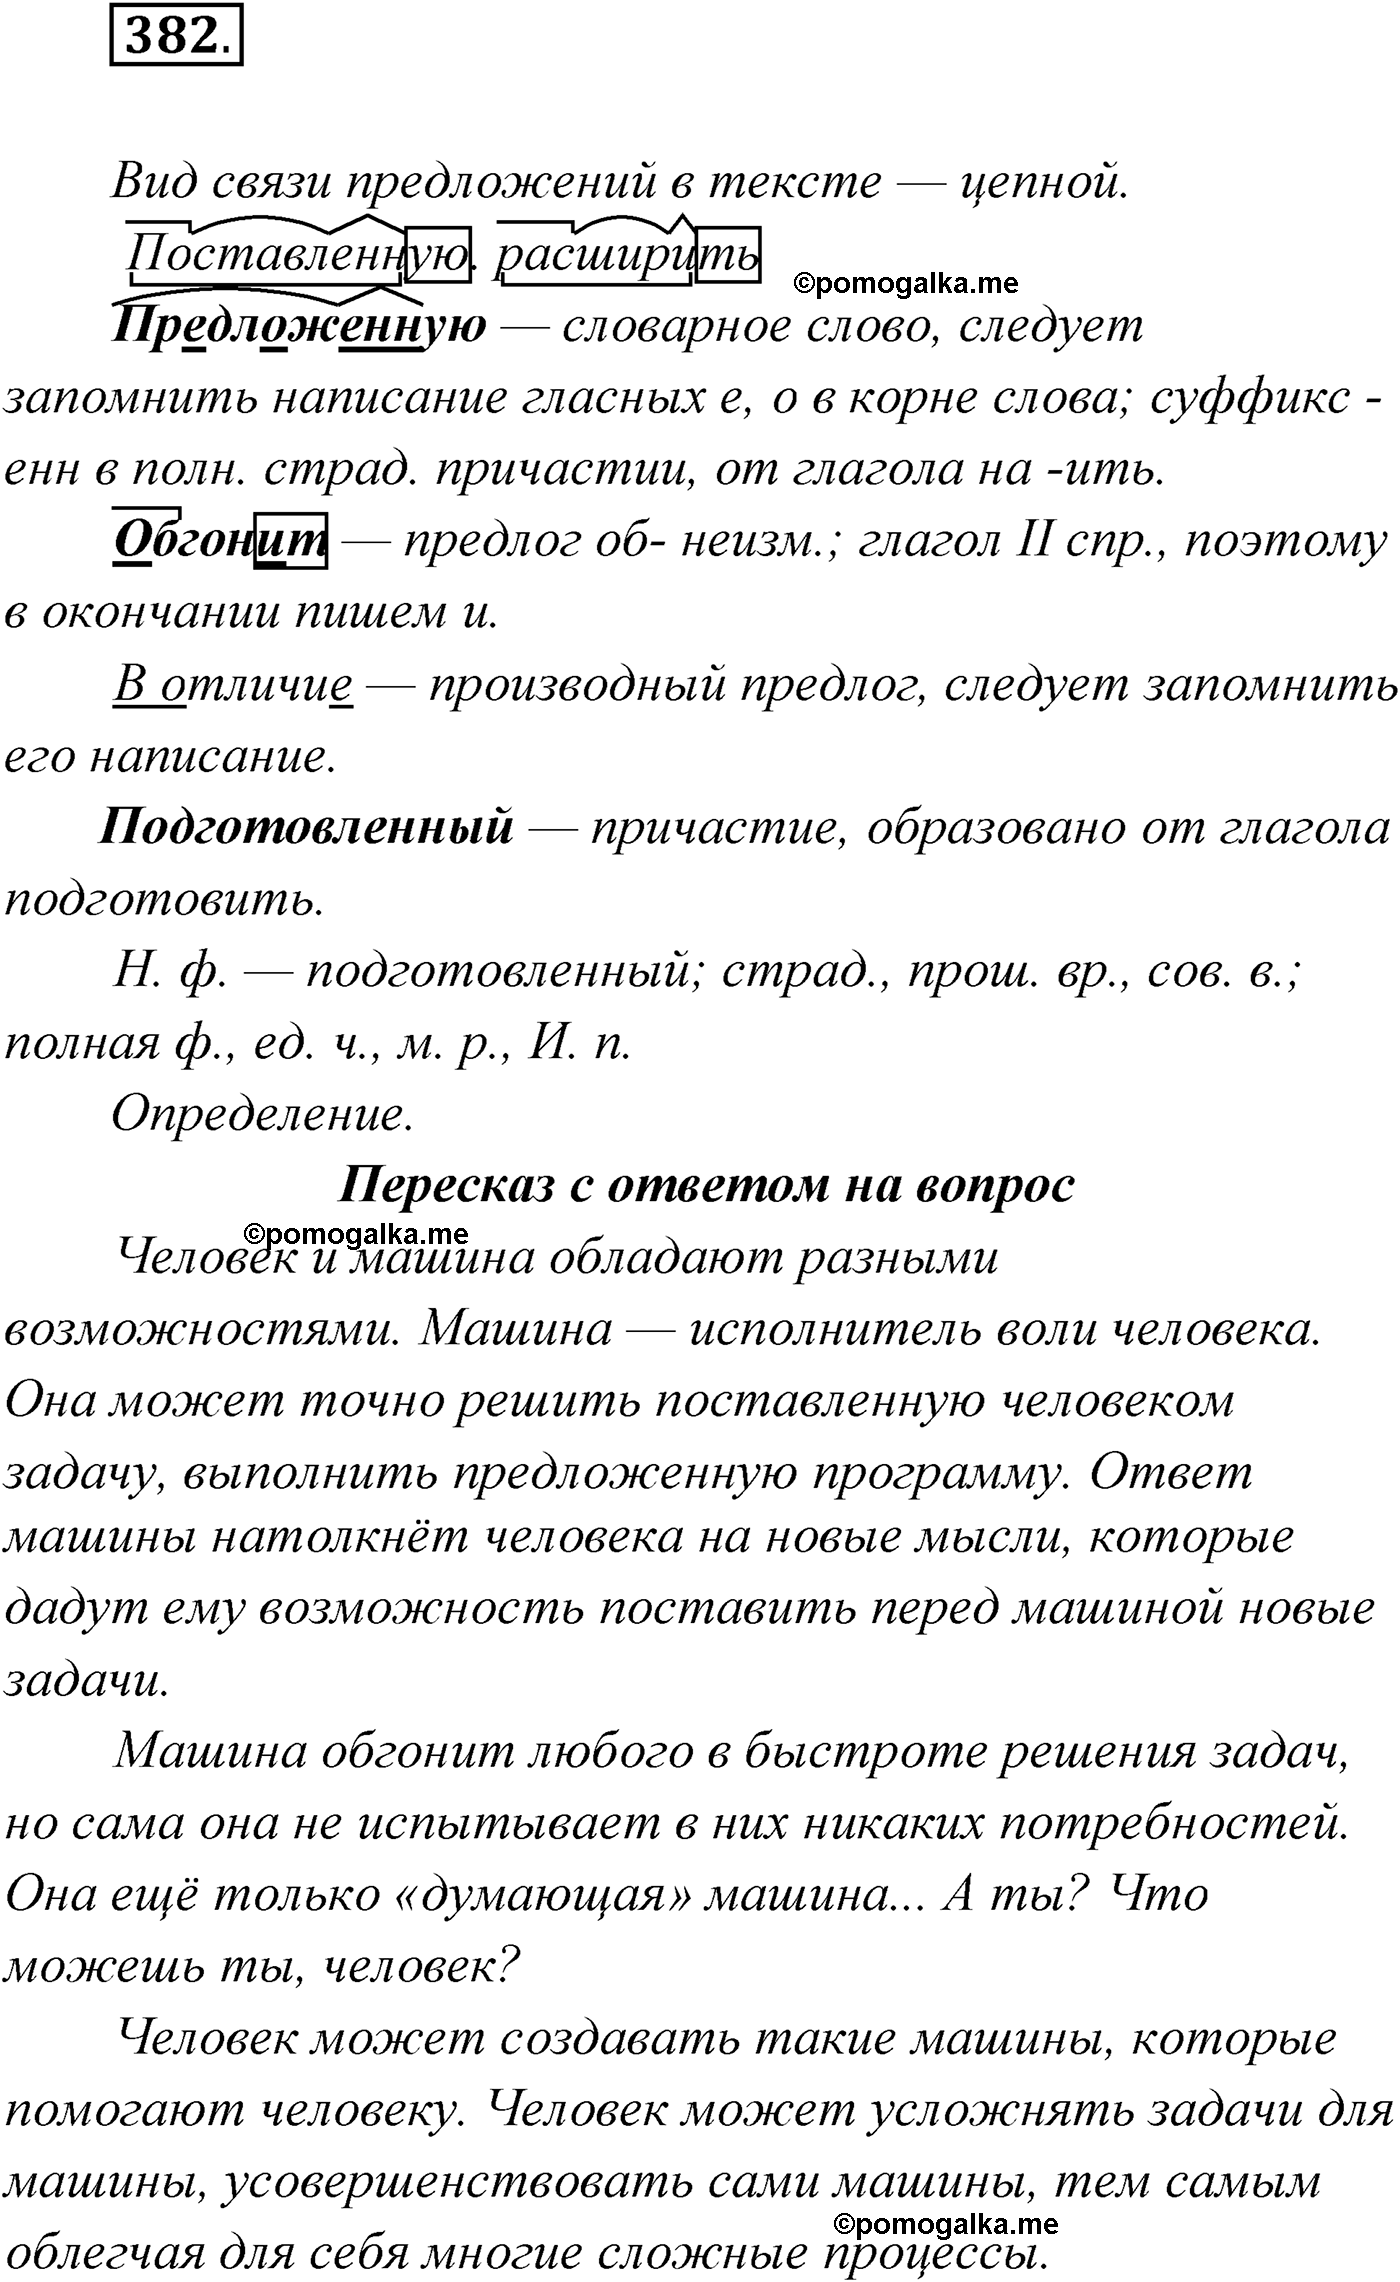 упражнение №382 русский язык 9 класс Мурина 2019 год